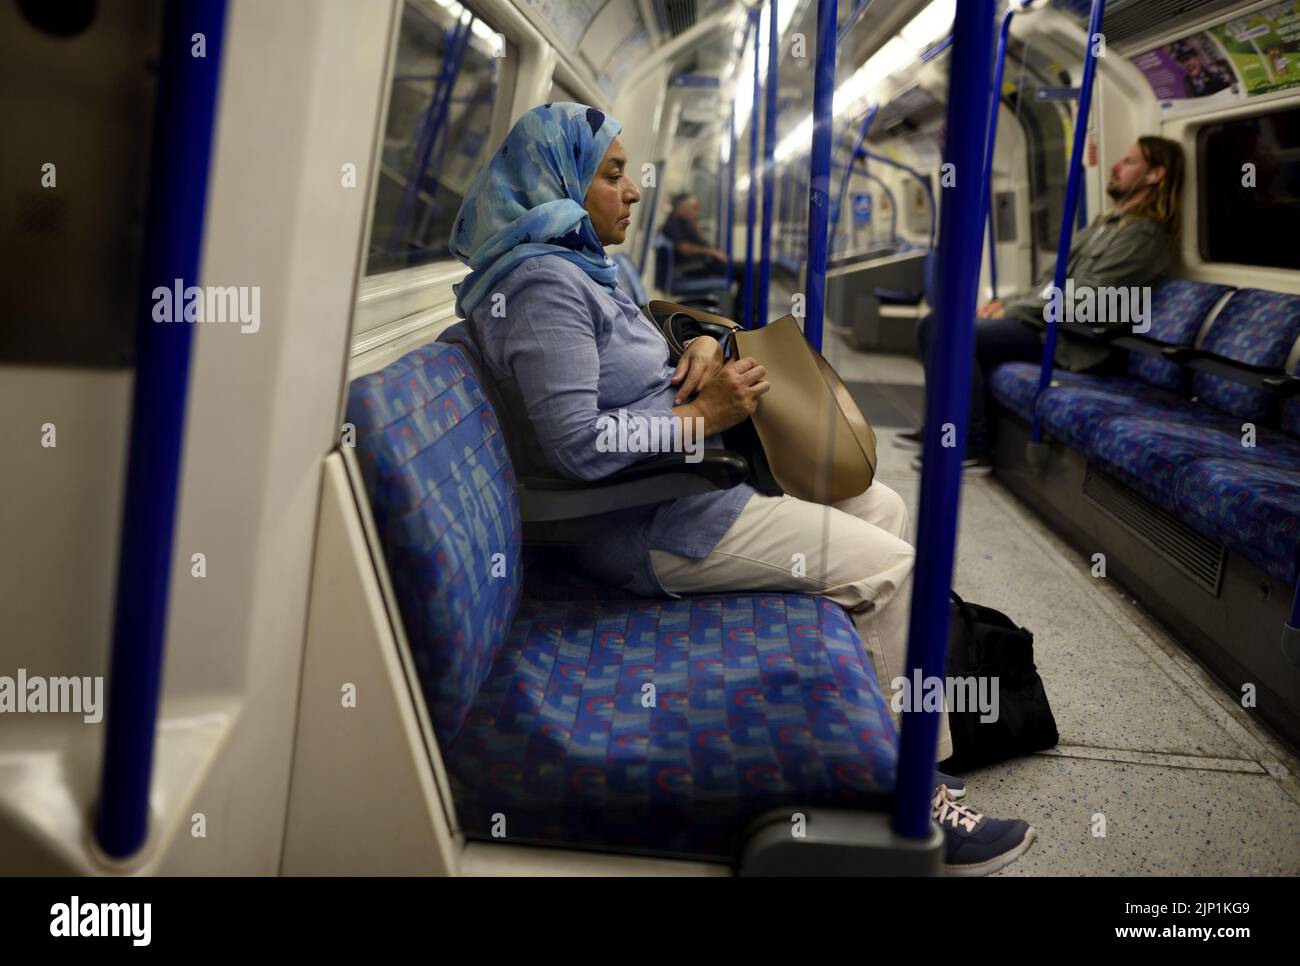 London, England, UK. London Underground - Muslim woman wearing a headscarf traveling alone Stock Photo